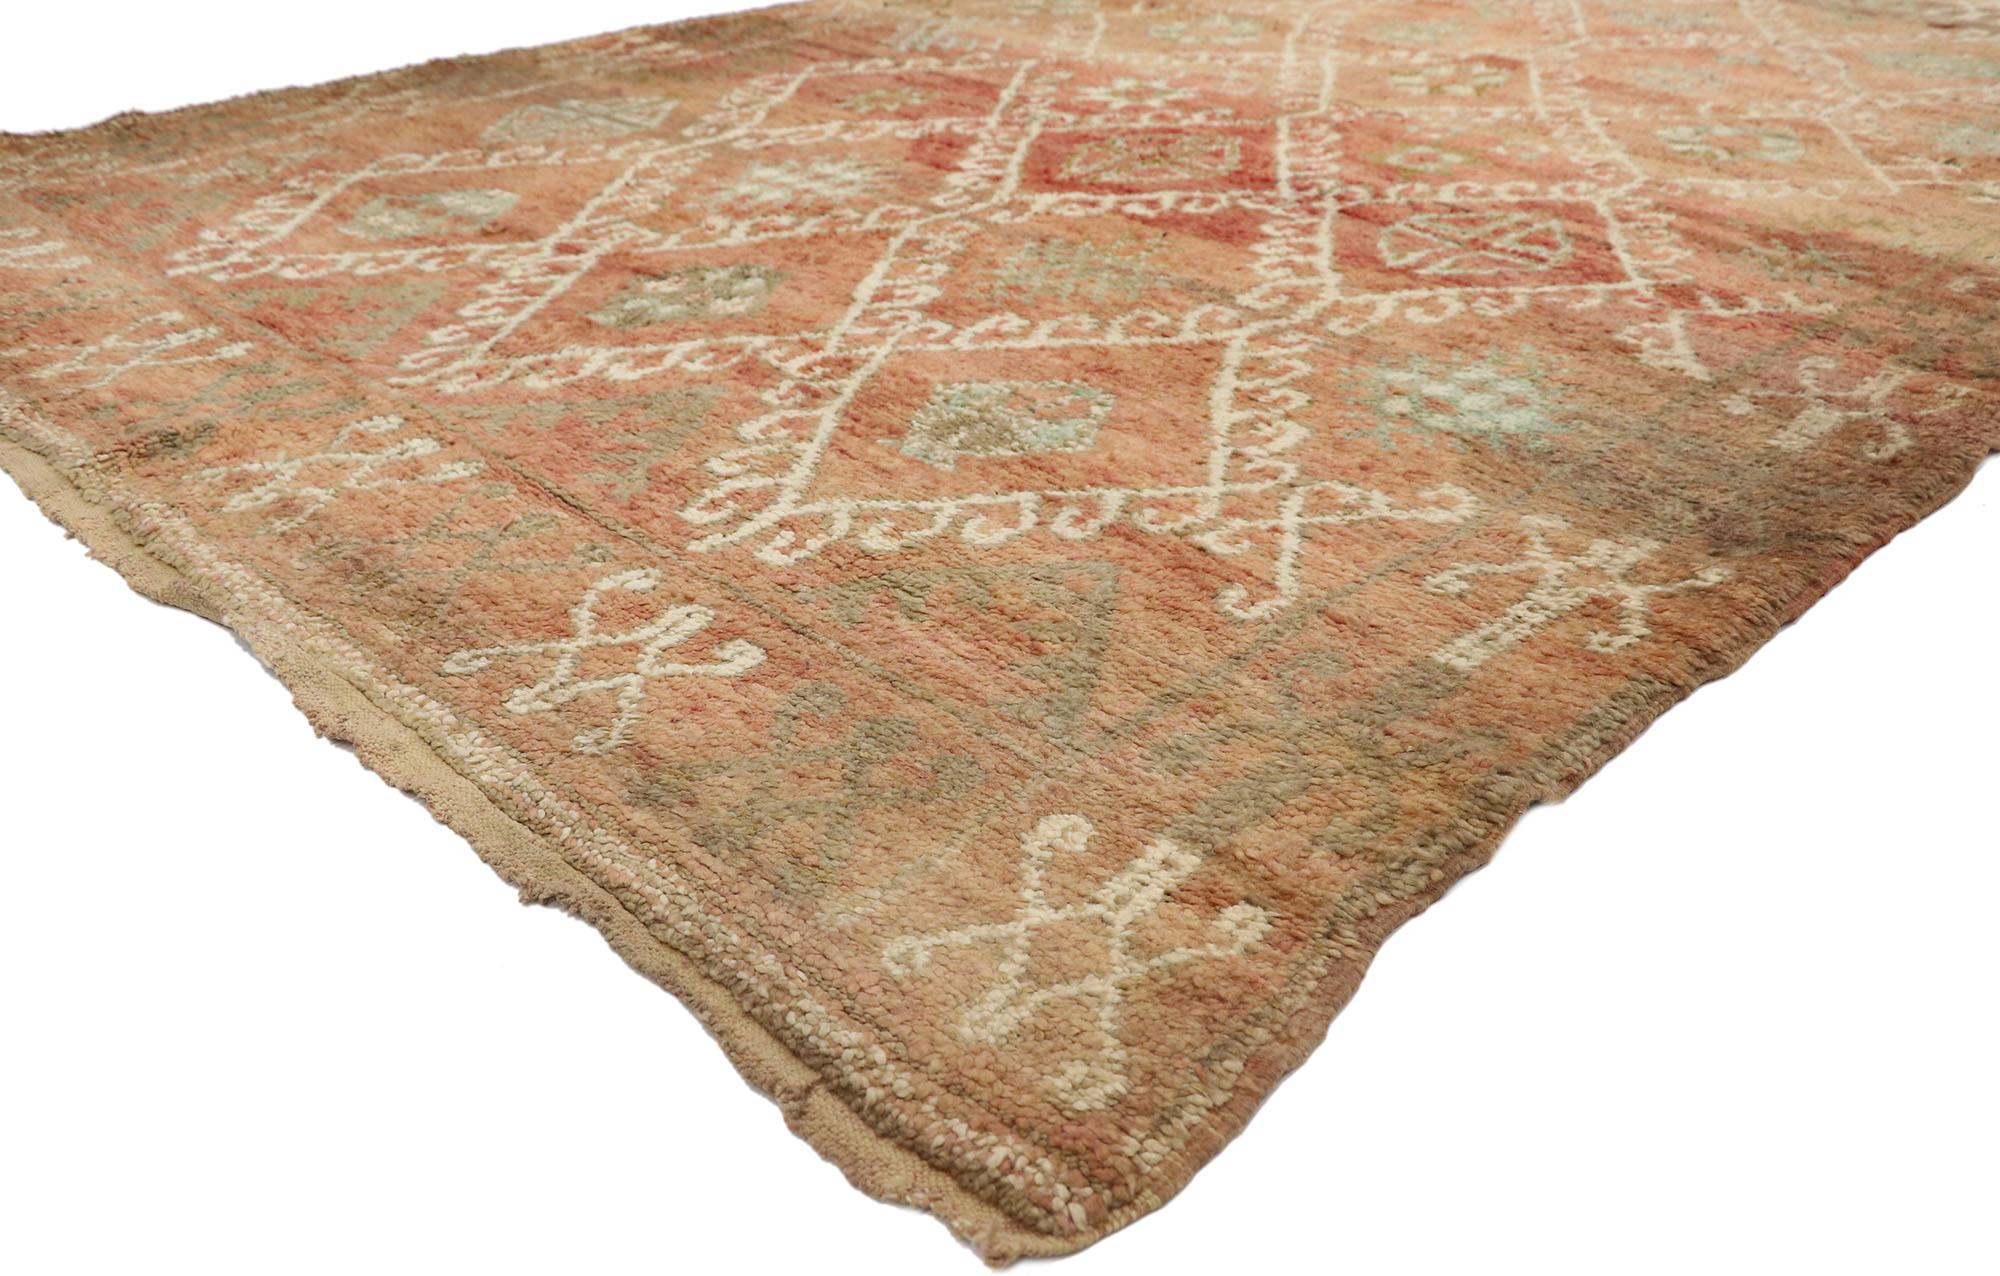 21246 Marokkanischer Berberteppich Vintage, 06'03 x 09'03.
Dieser handgeknüpfte marokkanische Teppich aus Wolle im Vintage-Stil strahlt rustikale Sensibilität und raue Schönheit aus und schafft eine unnachahmliche Wärme und ein beruhigendes